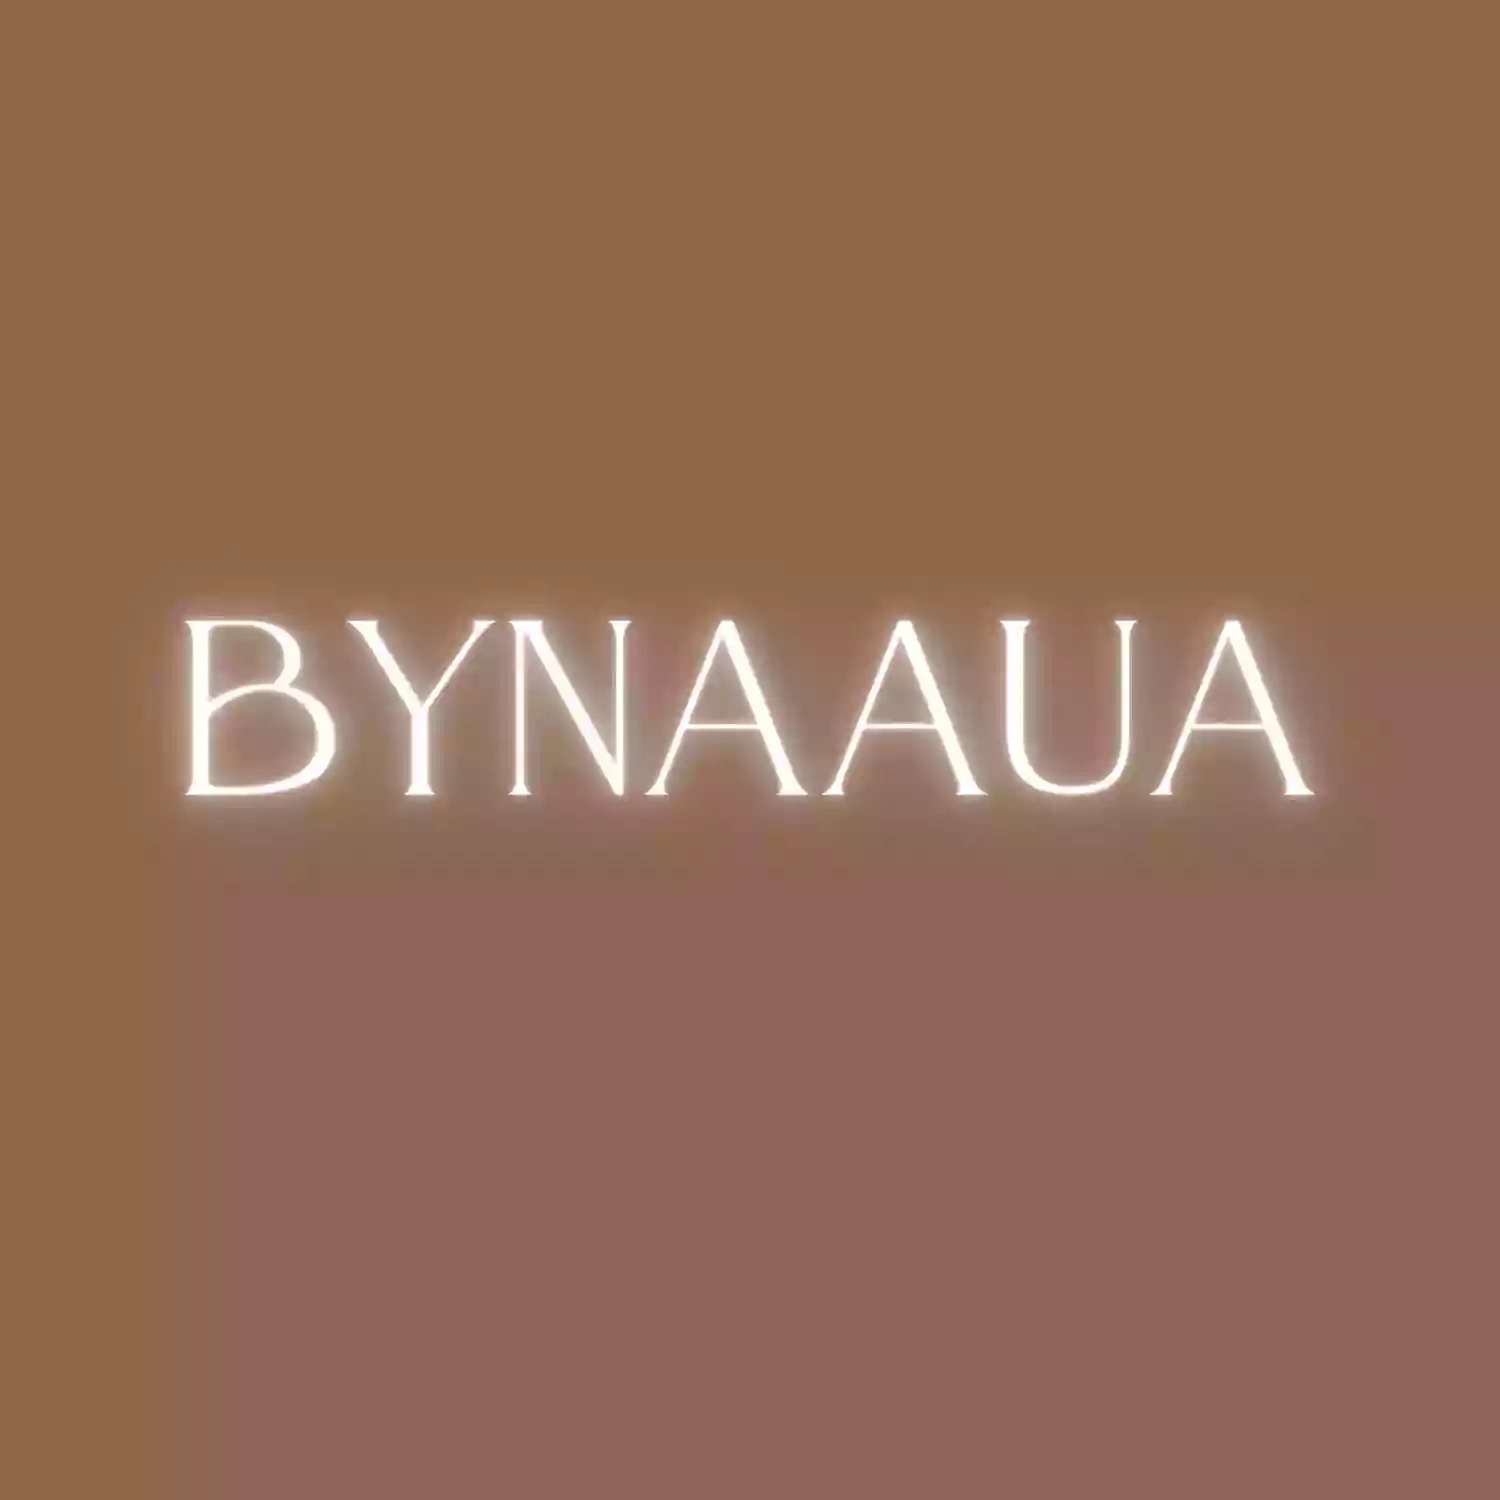 BYNAAUA Eyelash Extensions